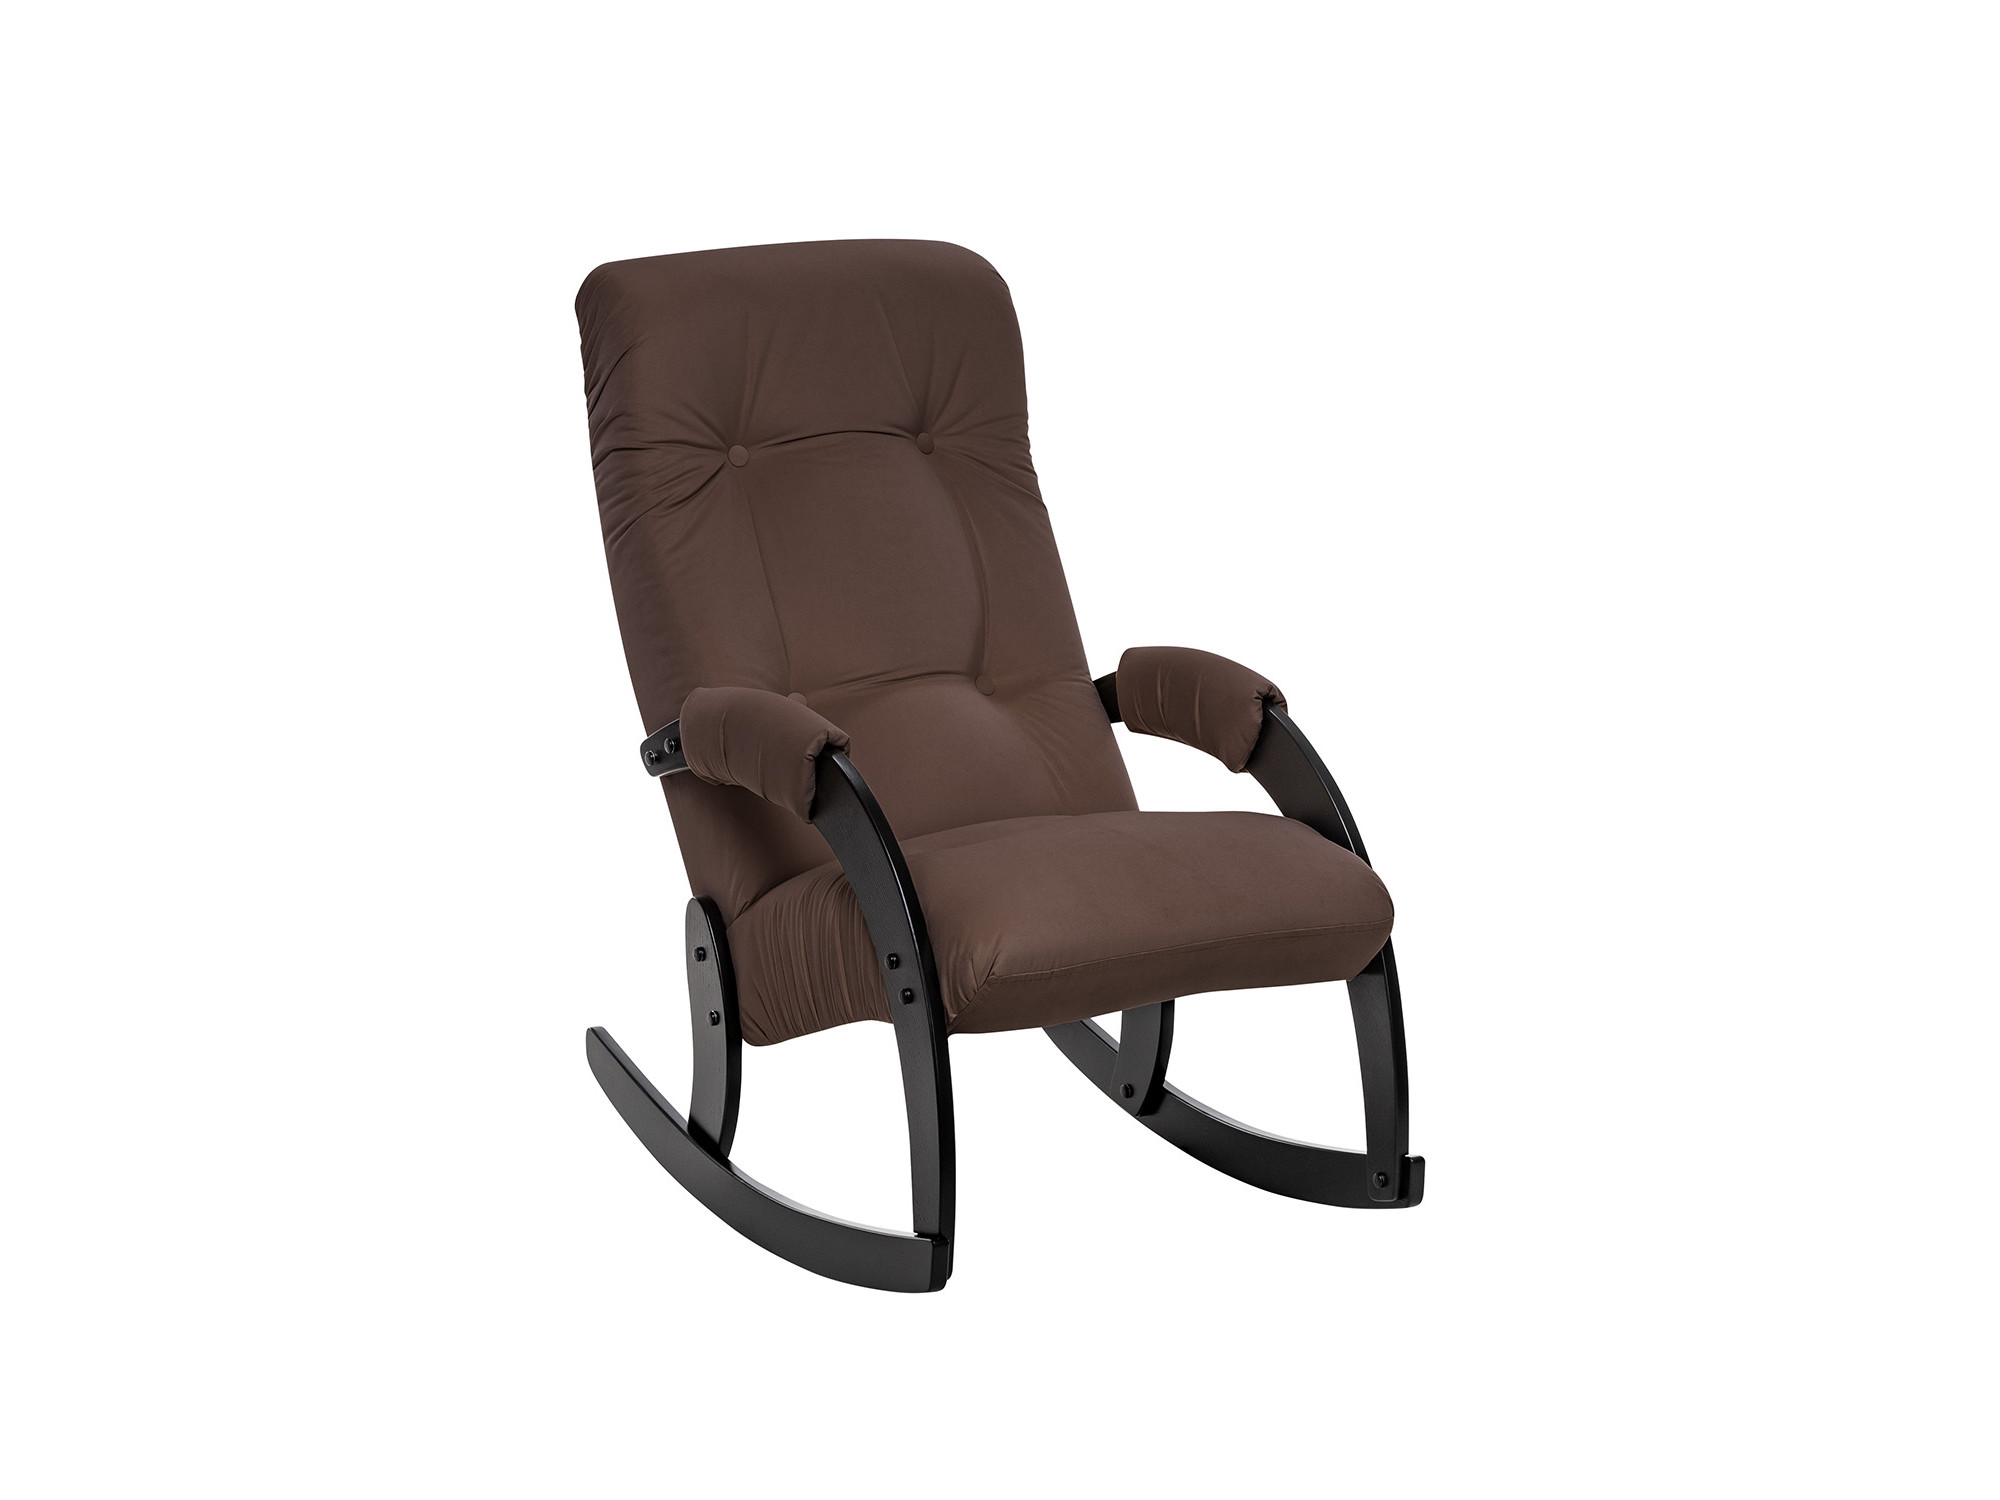 Кресло-качалка Модель 67 Венге, ткань V 23 MebelVia V23 молочный шоколад, Ткань Велюр, Фанера, шпон, лак кресло качалка модель 67